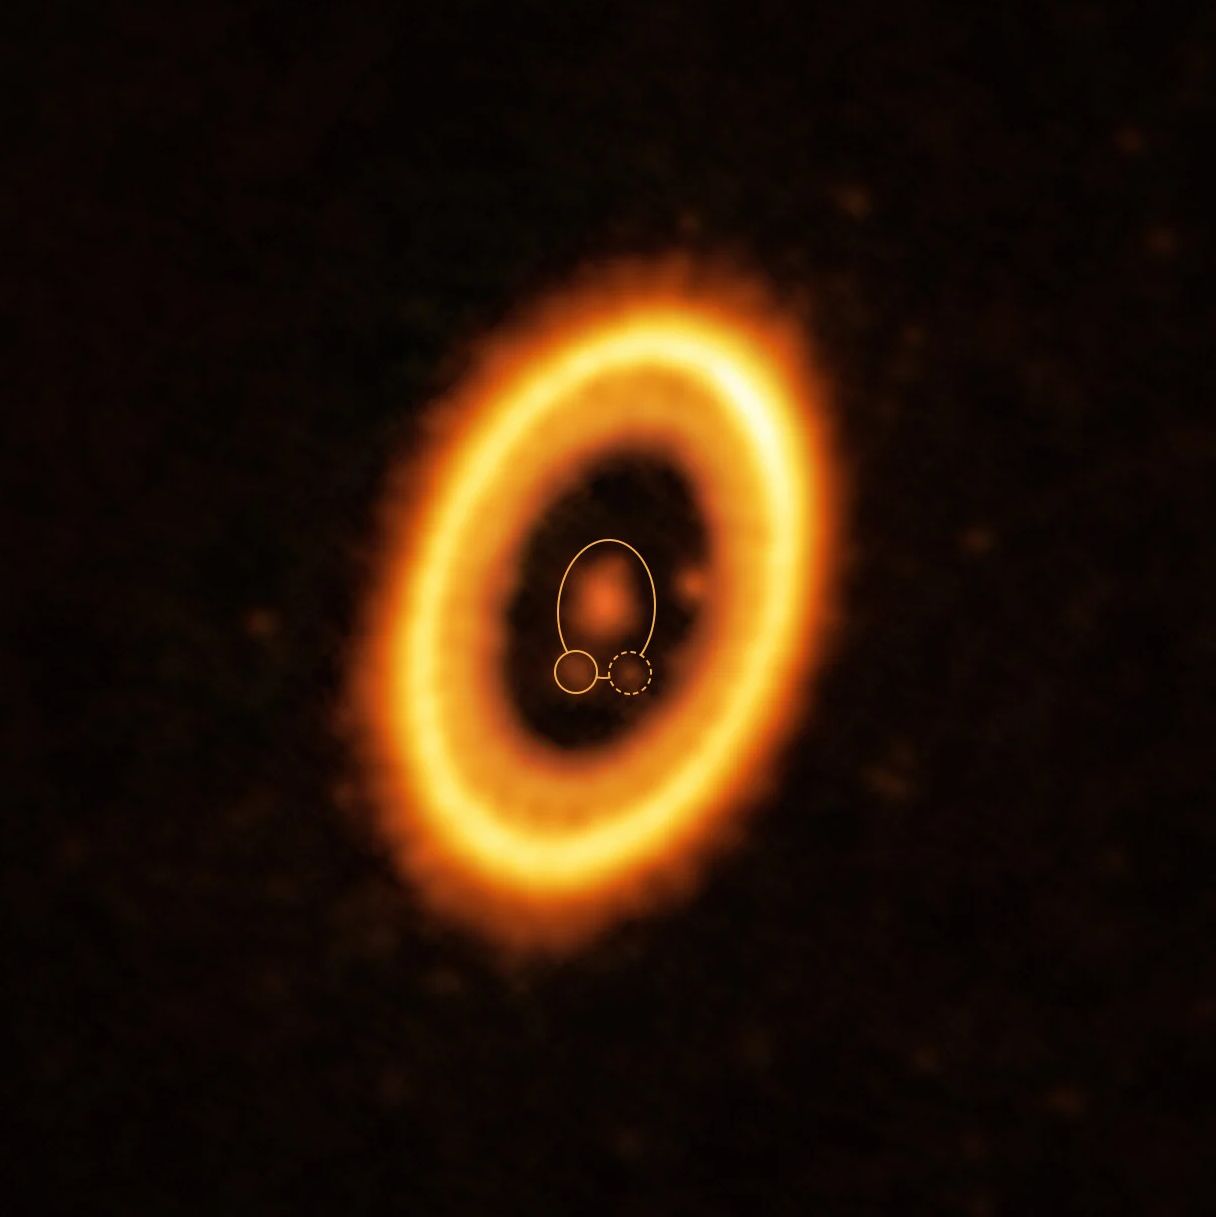 W centrum układu PDS 70 widać młodą gwiazdę oraz planety formujące się dookoła niej. Jedna z planety jest zaznaczona okręgiem, druga znajduje się po prawej stronie w wewnętrznym kręgu.